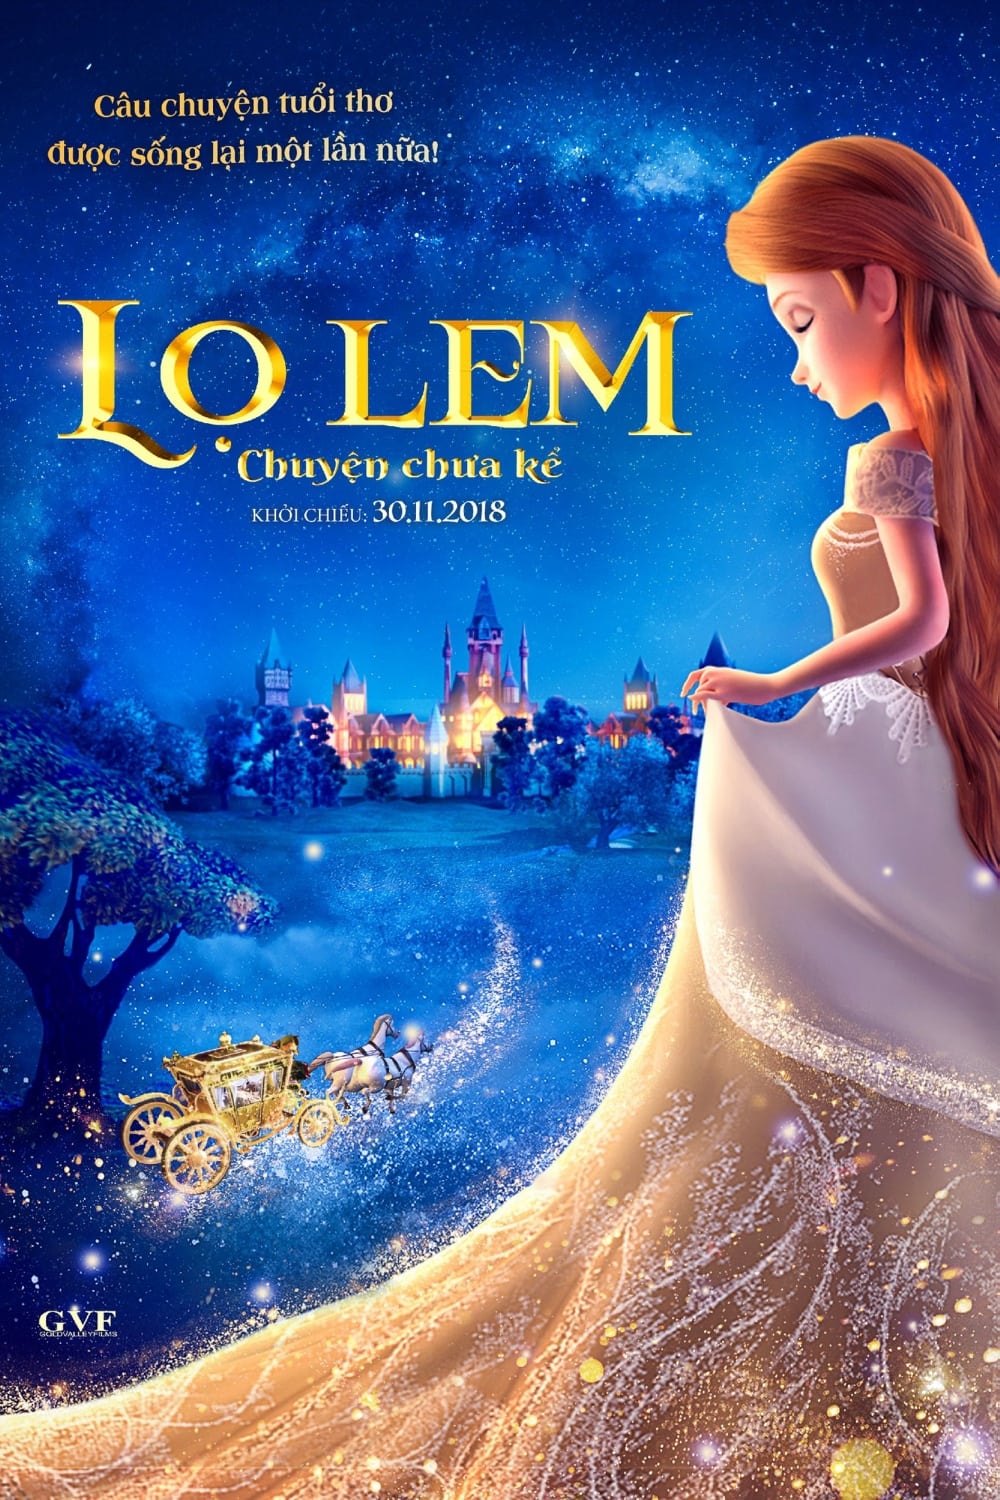 Lọ Lem: Chuyện Chưa Kể (Cinderella and the Secret Prince) [2018]